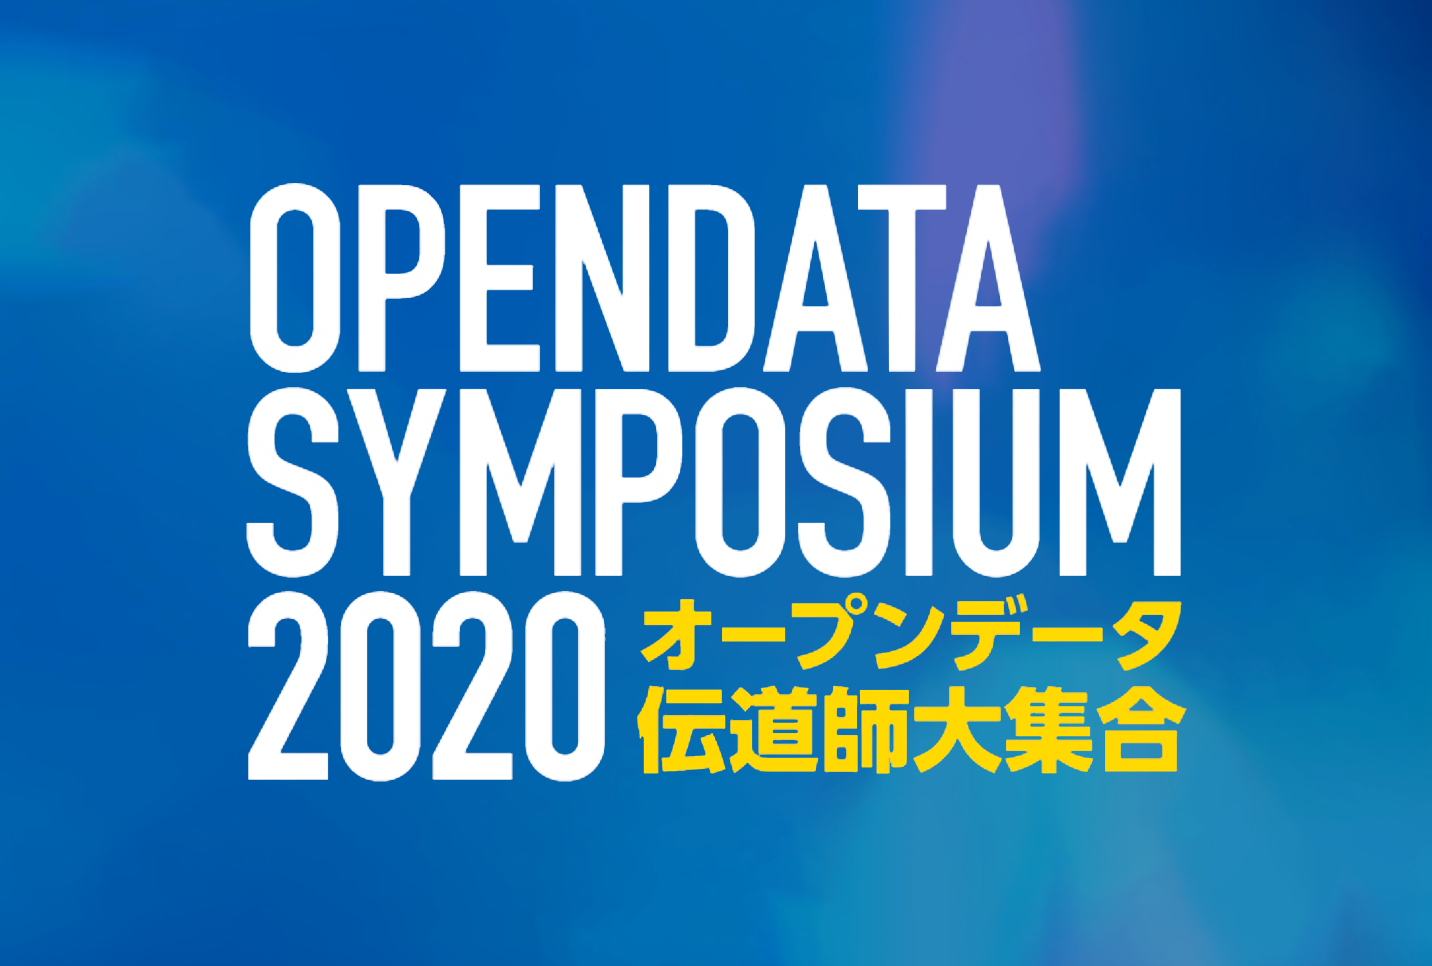 opendata-symposium2020